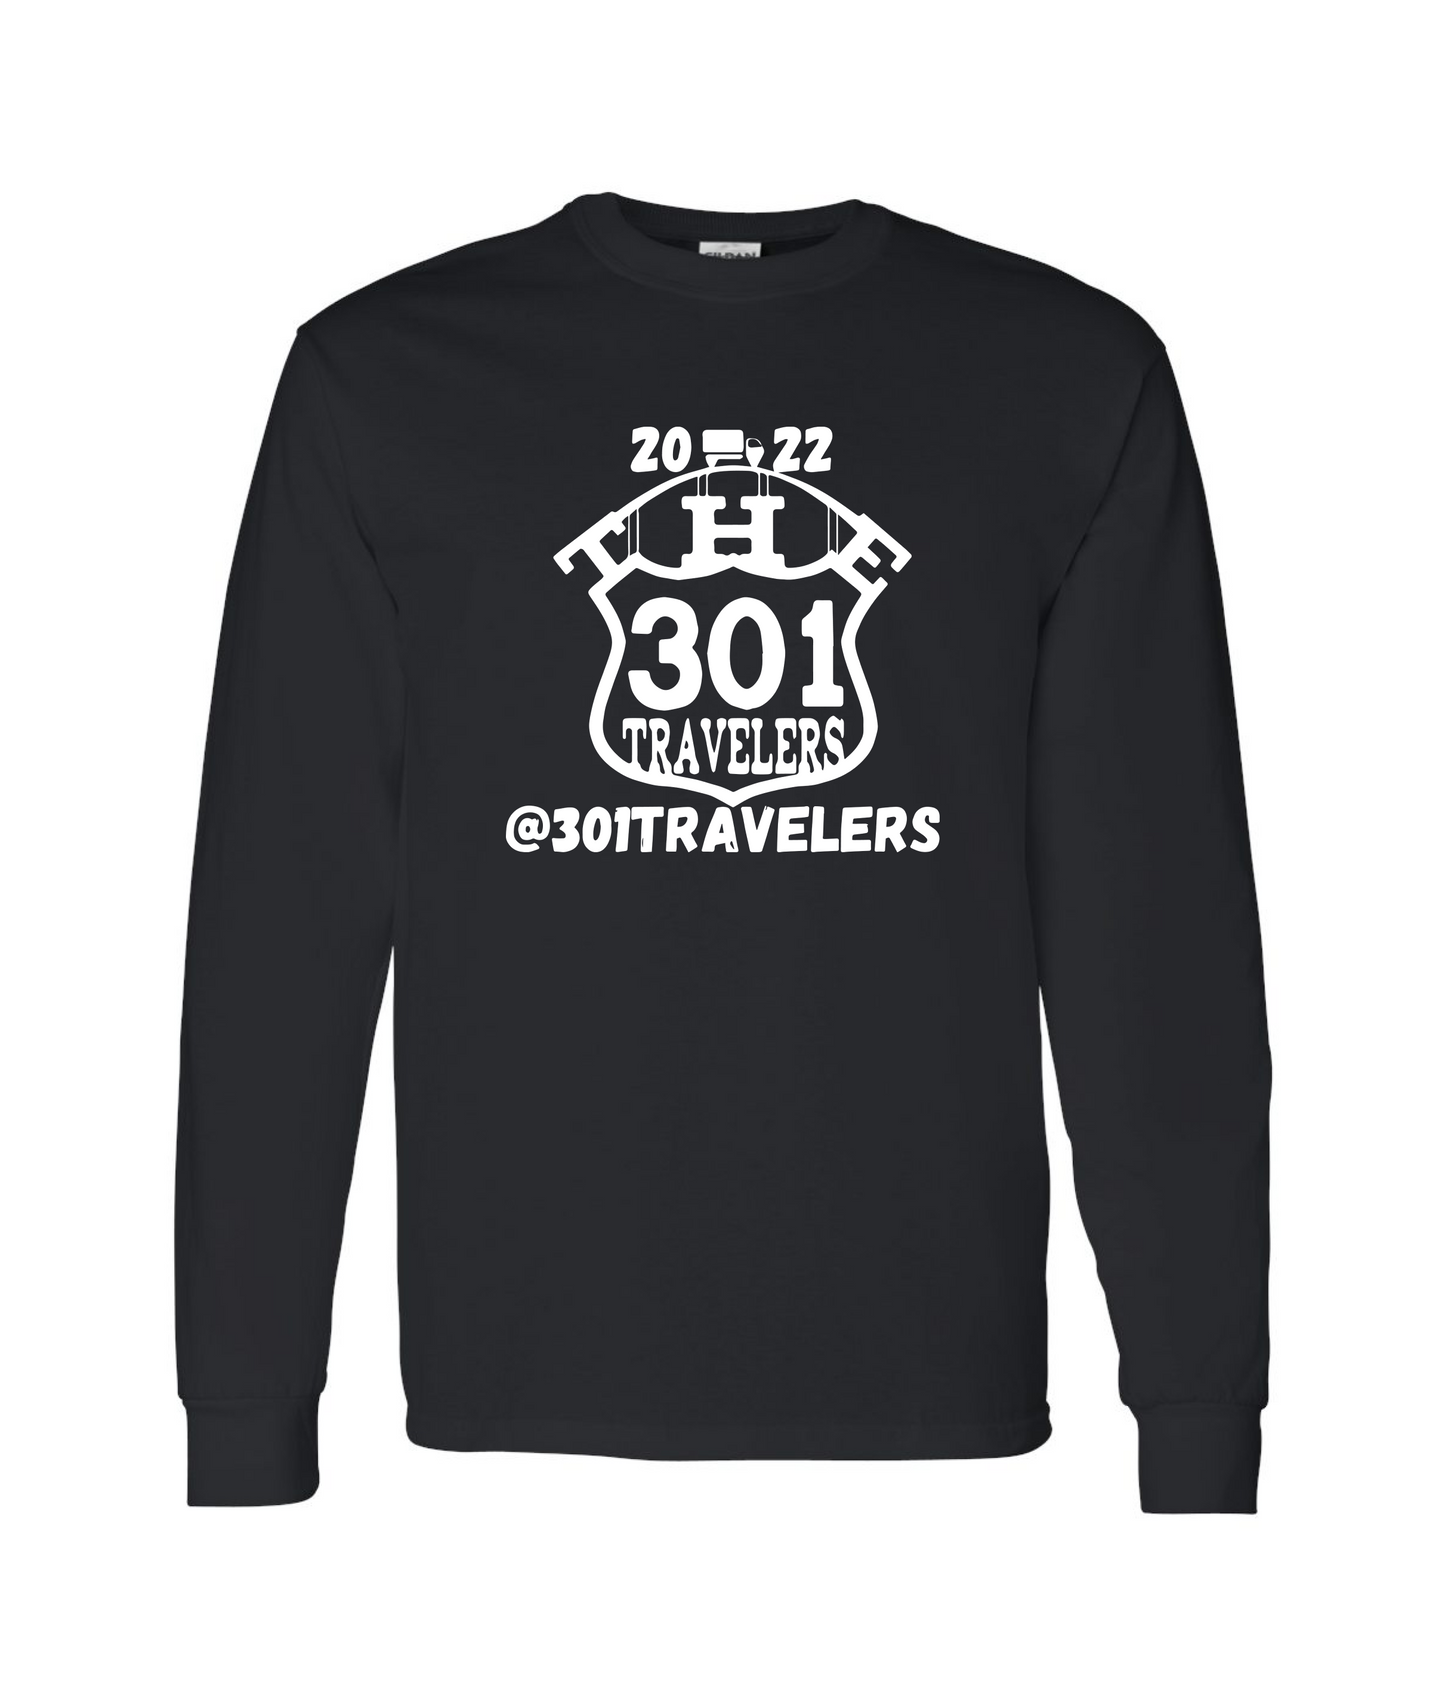 The 301 Traveler's - Highway 301 - Black Long Sleeve T